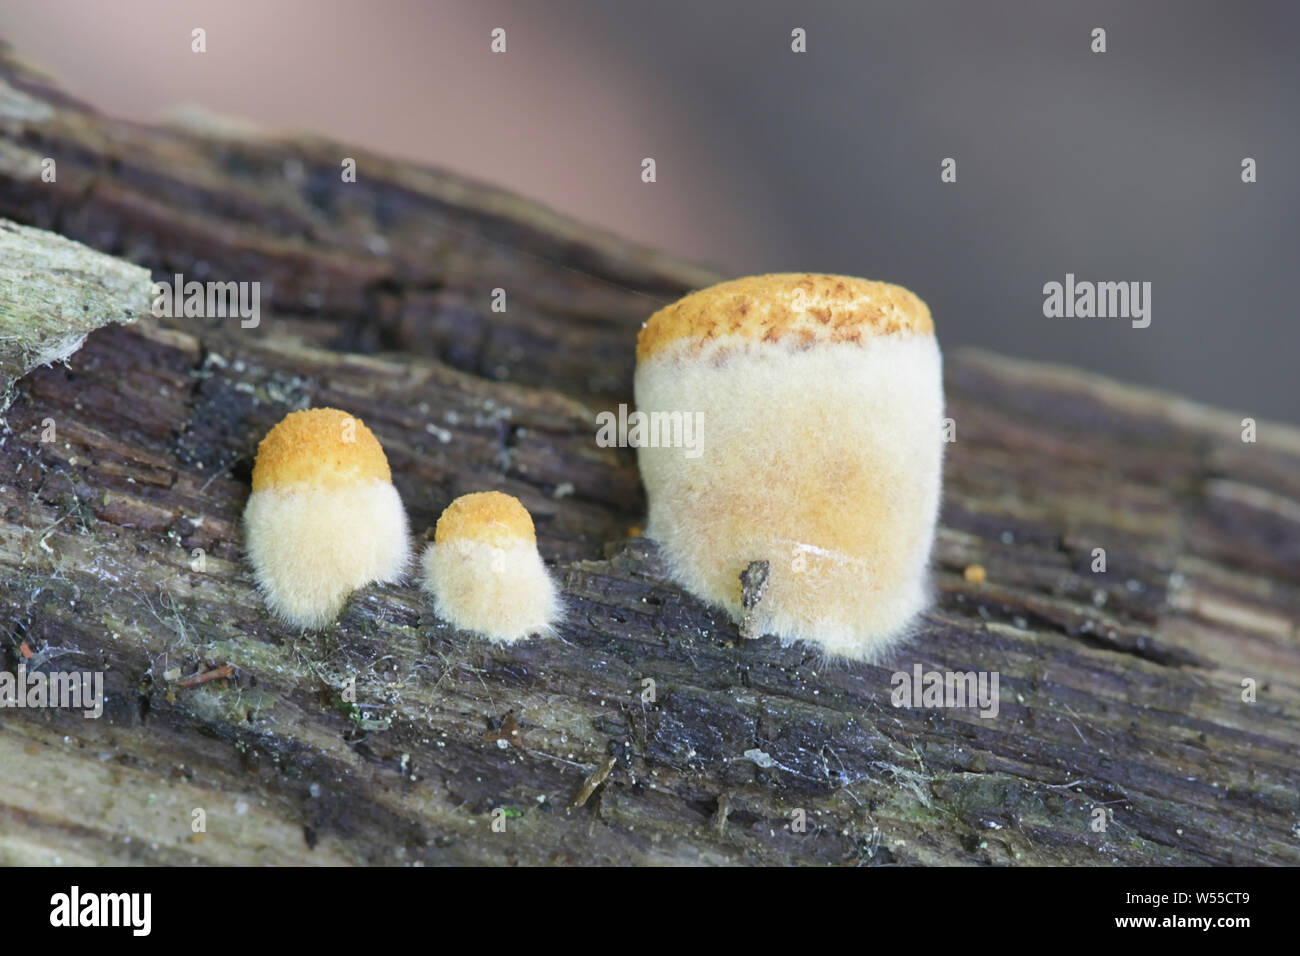 Crucibulum laeve, the Common Bird's-nest Fungus, young specimens growing on rotting wood Stock Photo